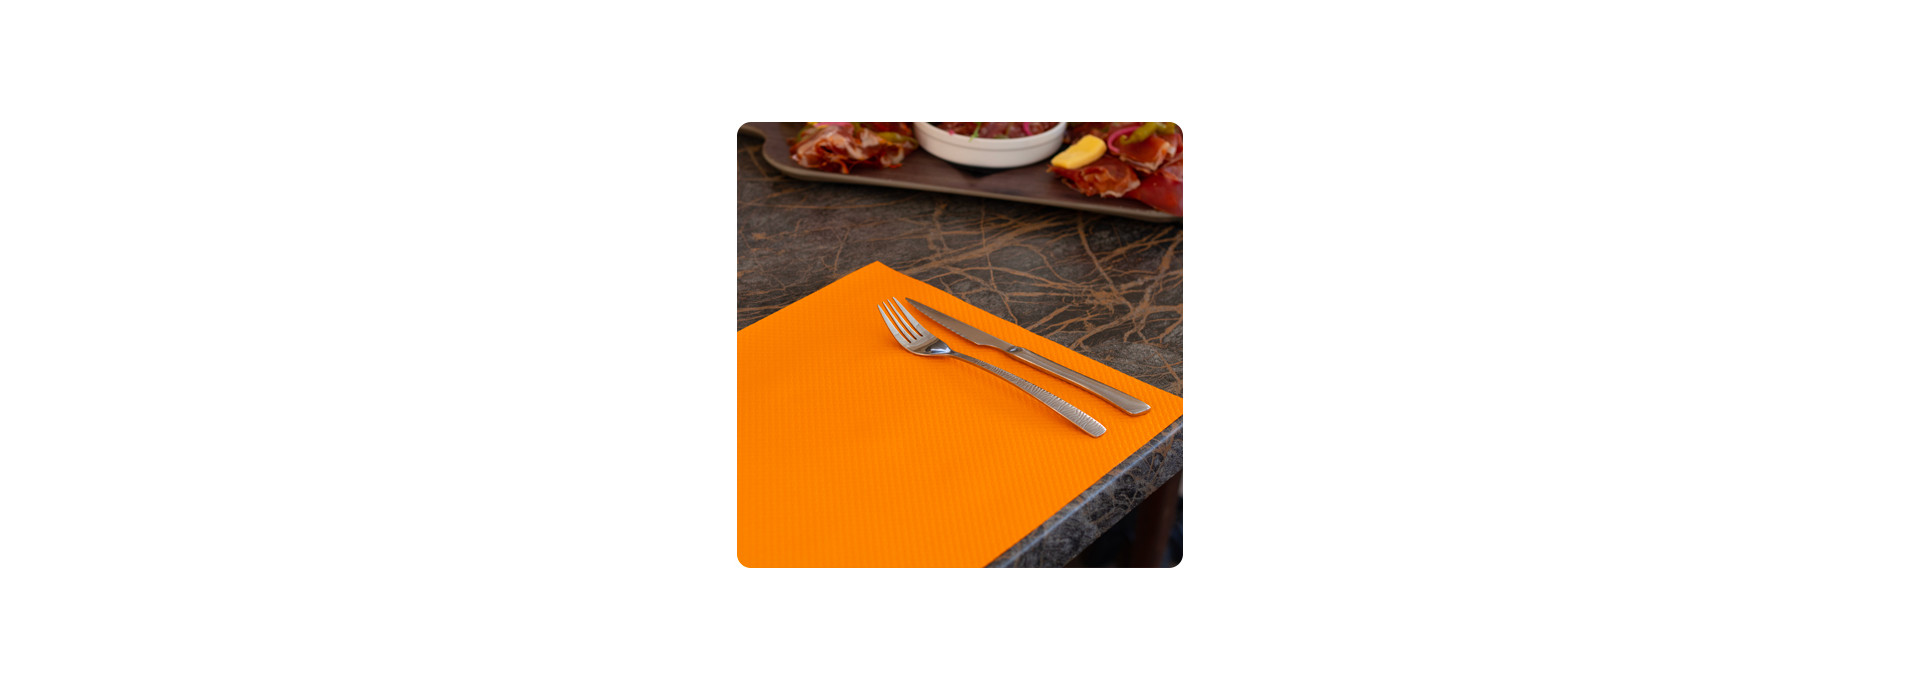 Set de table en papier orange pour table en terrasse de restaurant